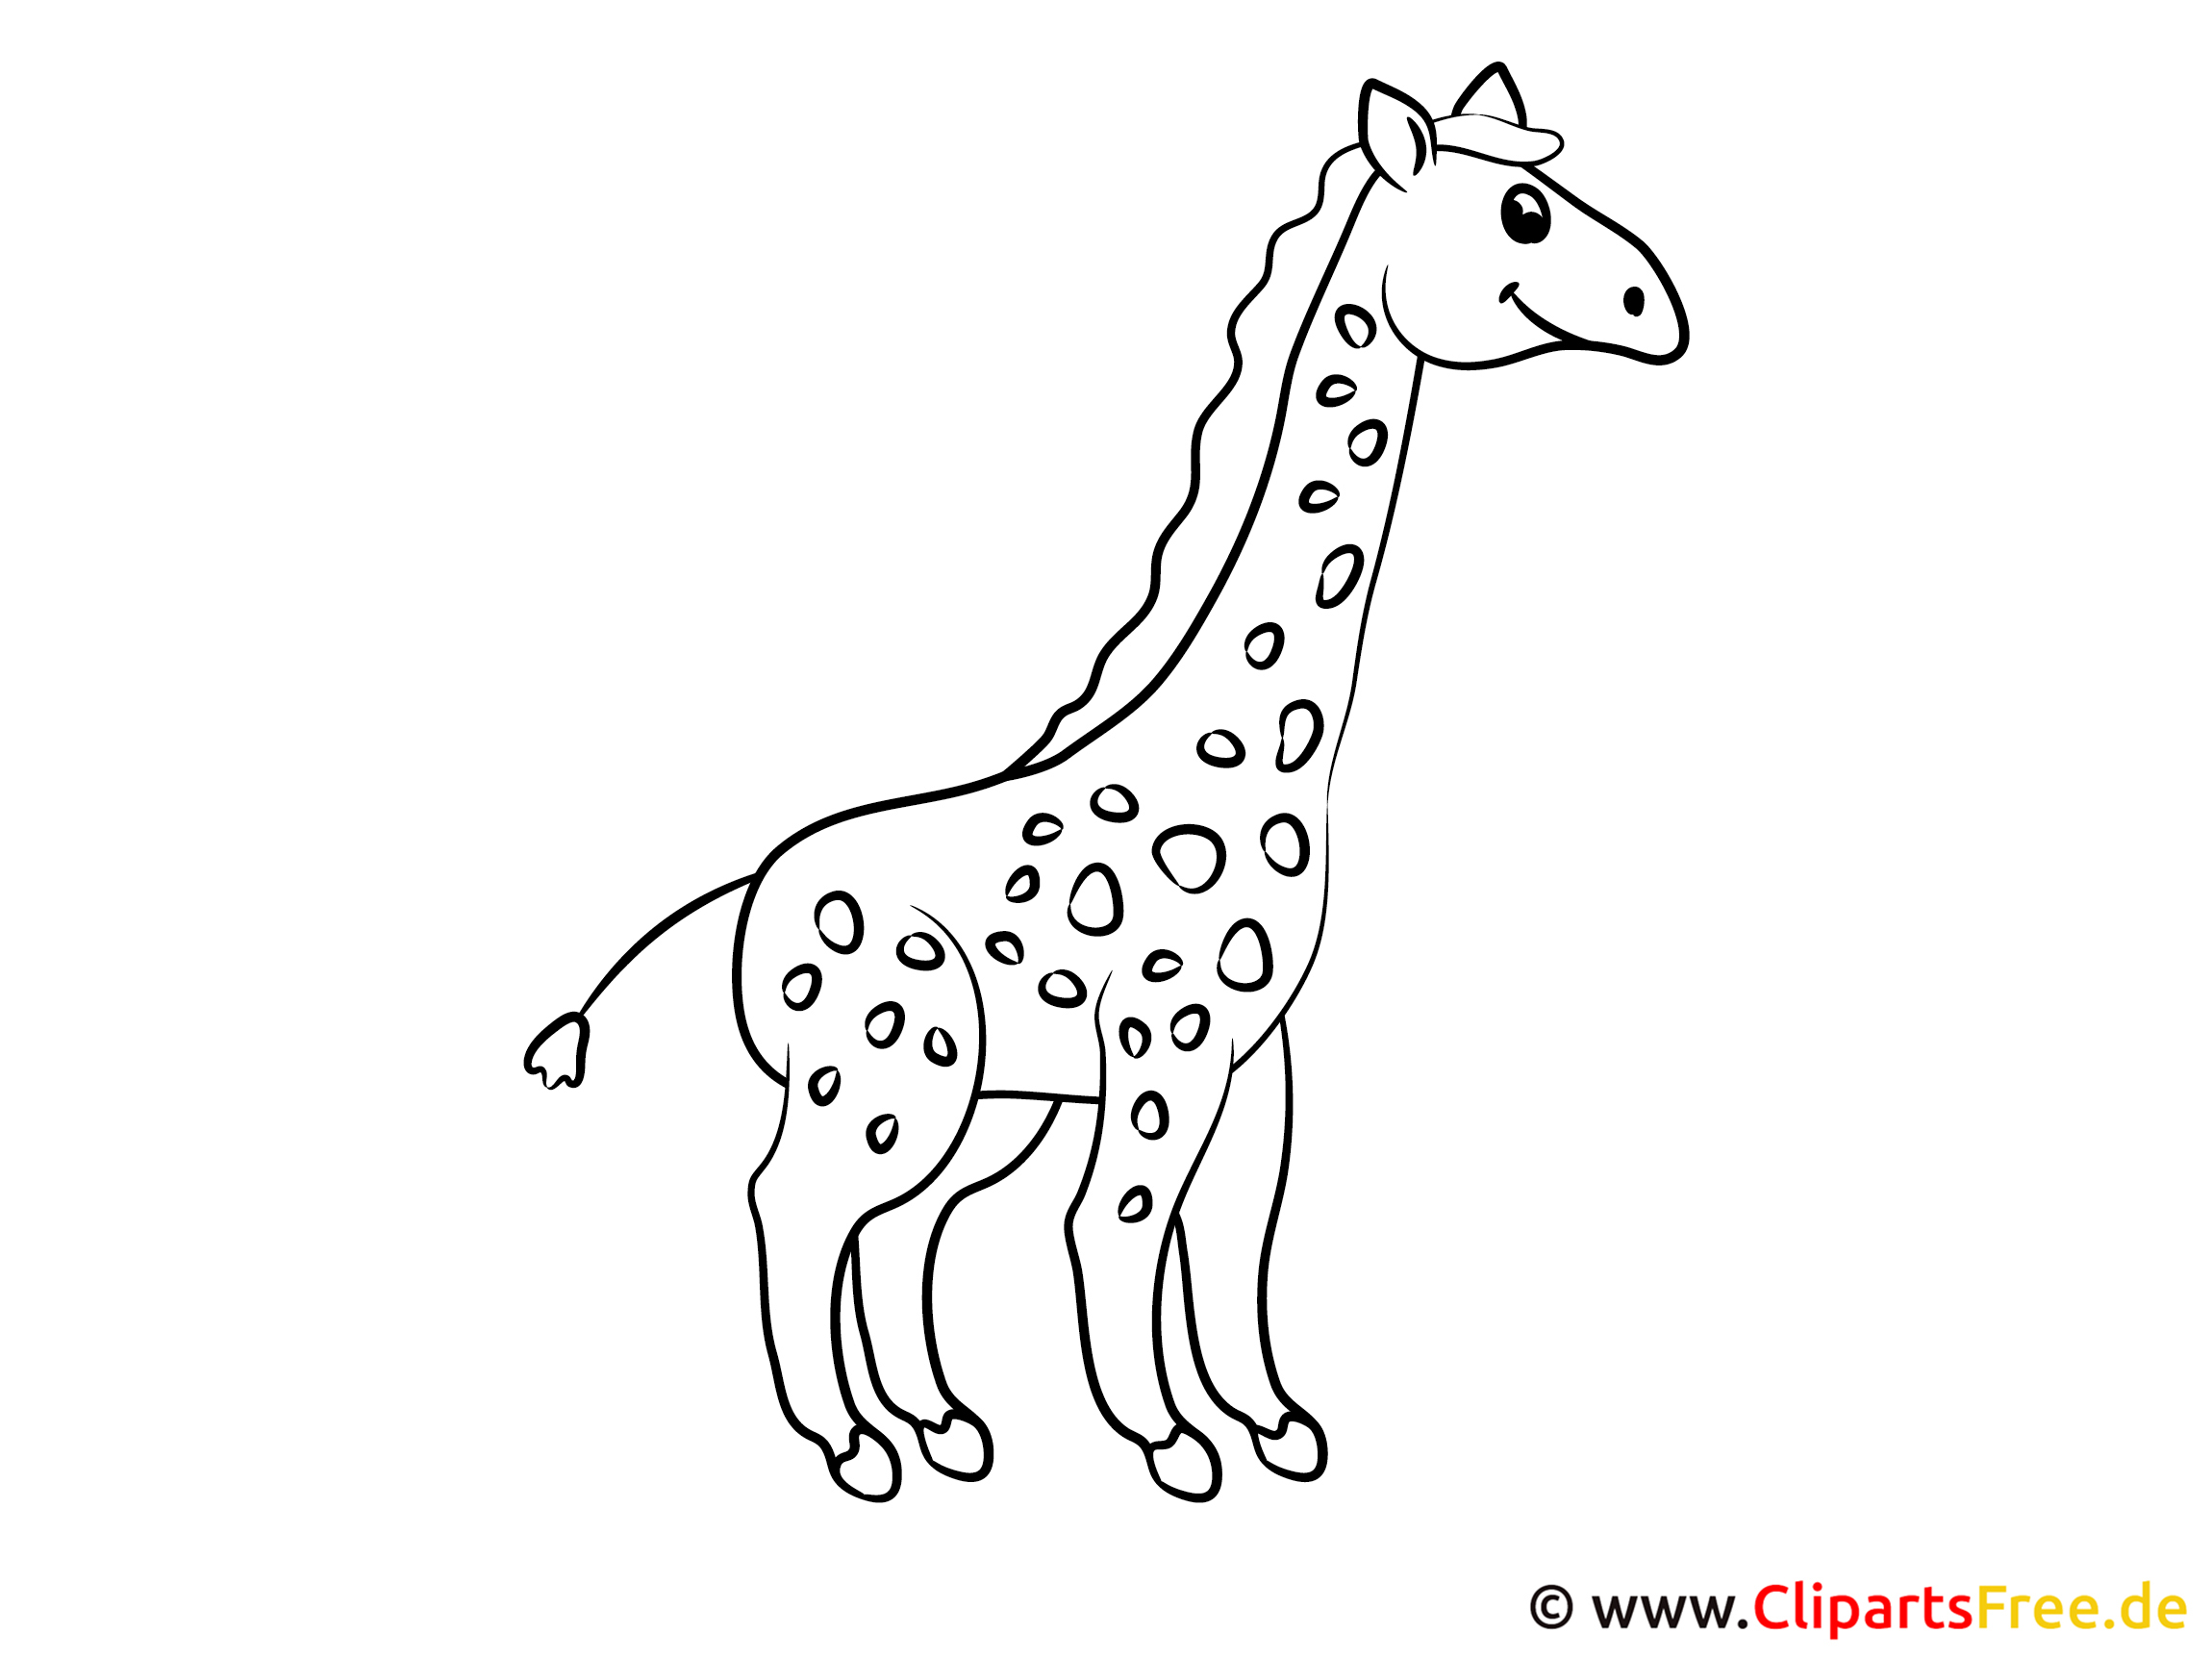 p-gina-para-colorir-modelo-girafa